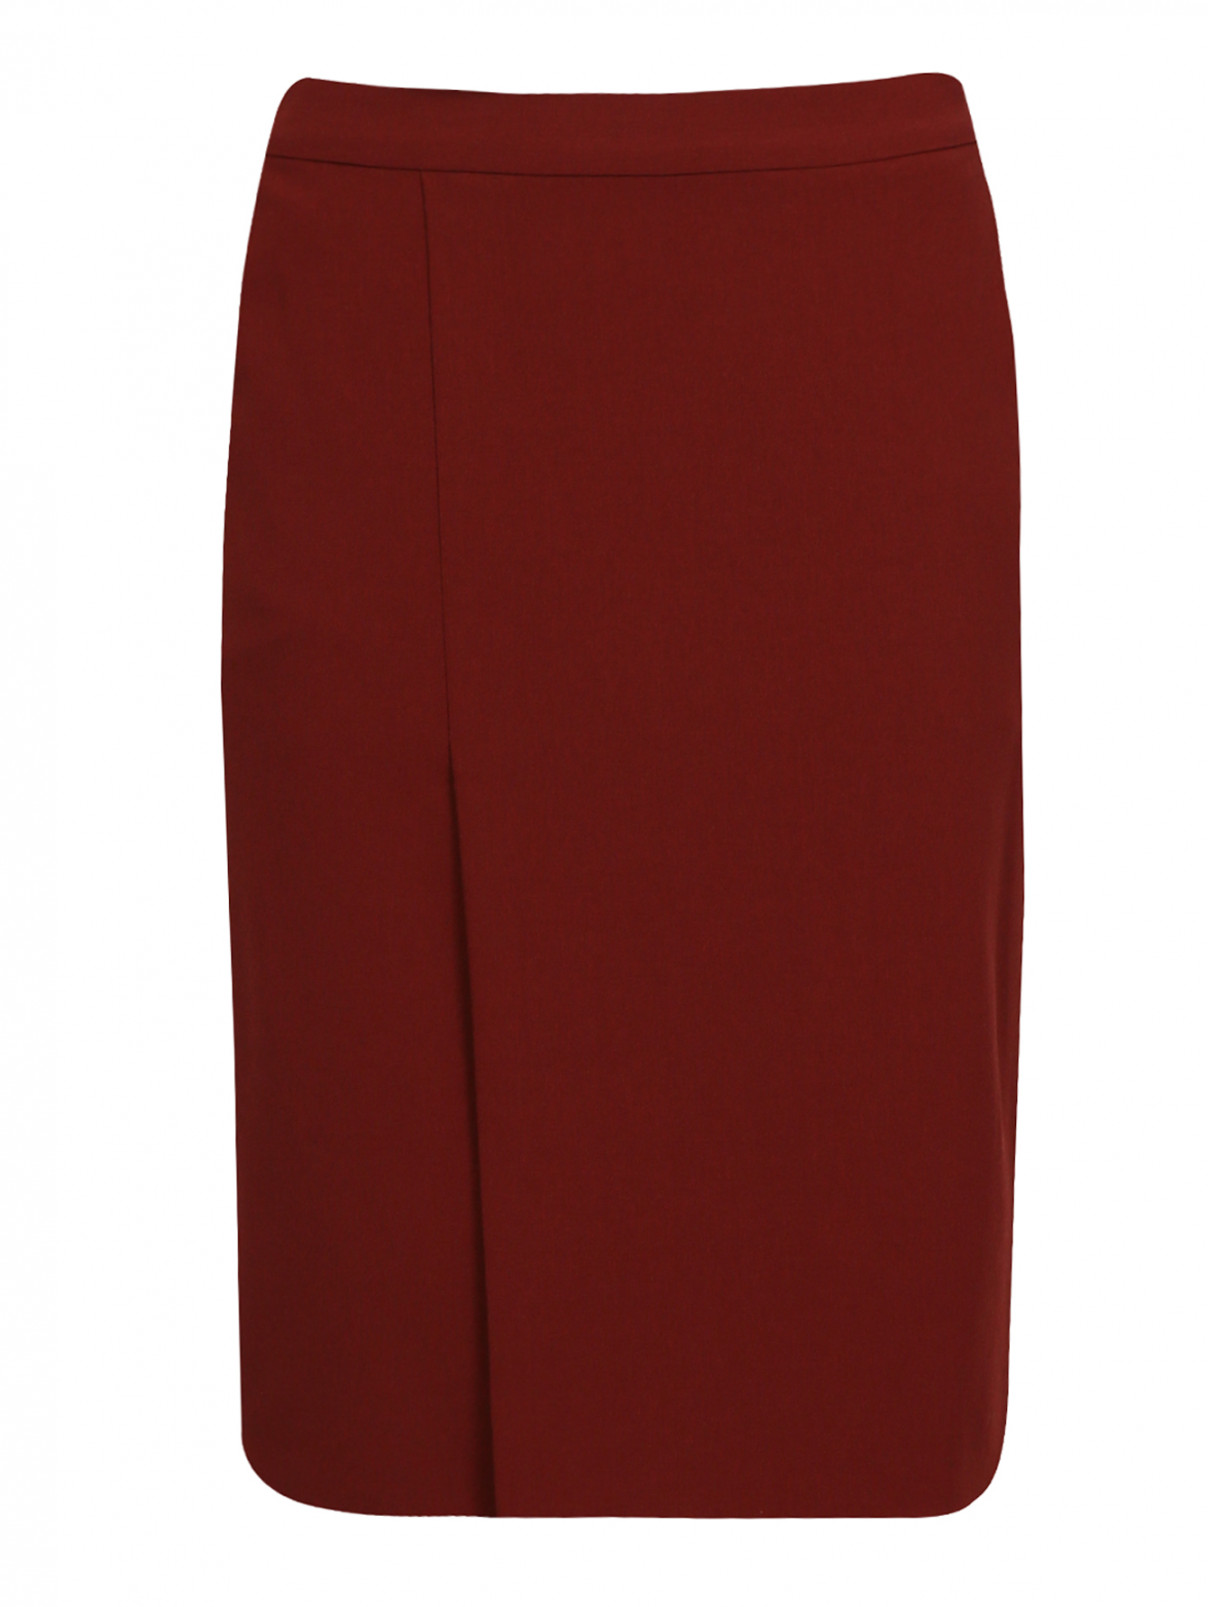 Юбка из шерсти с вырезом Jean Paul Gaultier  –  Общий вид  – Цвет:  Красный